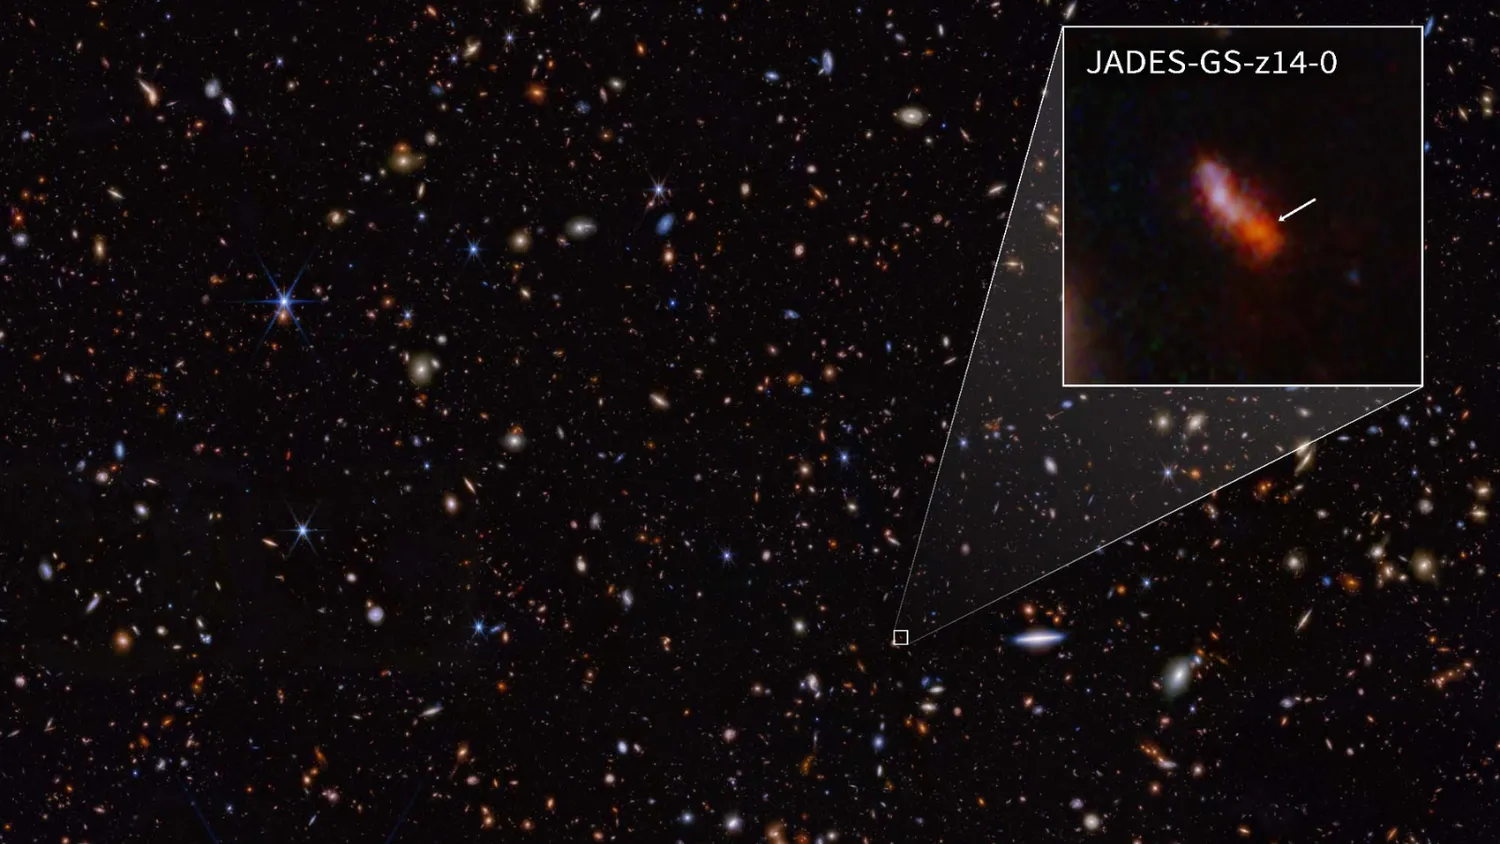 Mehr über den Artikel erfahren James-Webb-Weltraumteleskop entdeckt die 2 frühesten jemals gesehenen Galaxien (Bild)